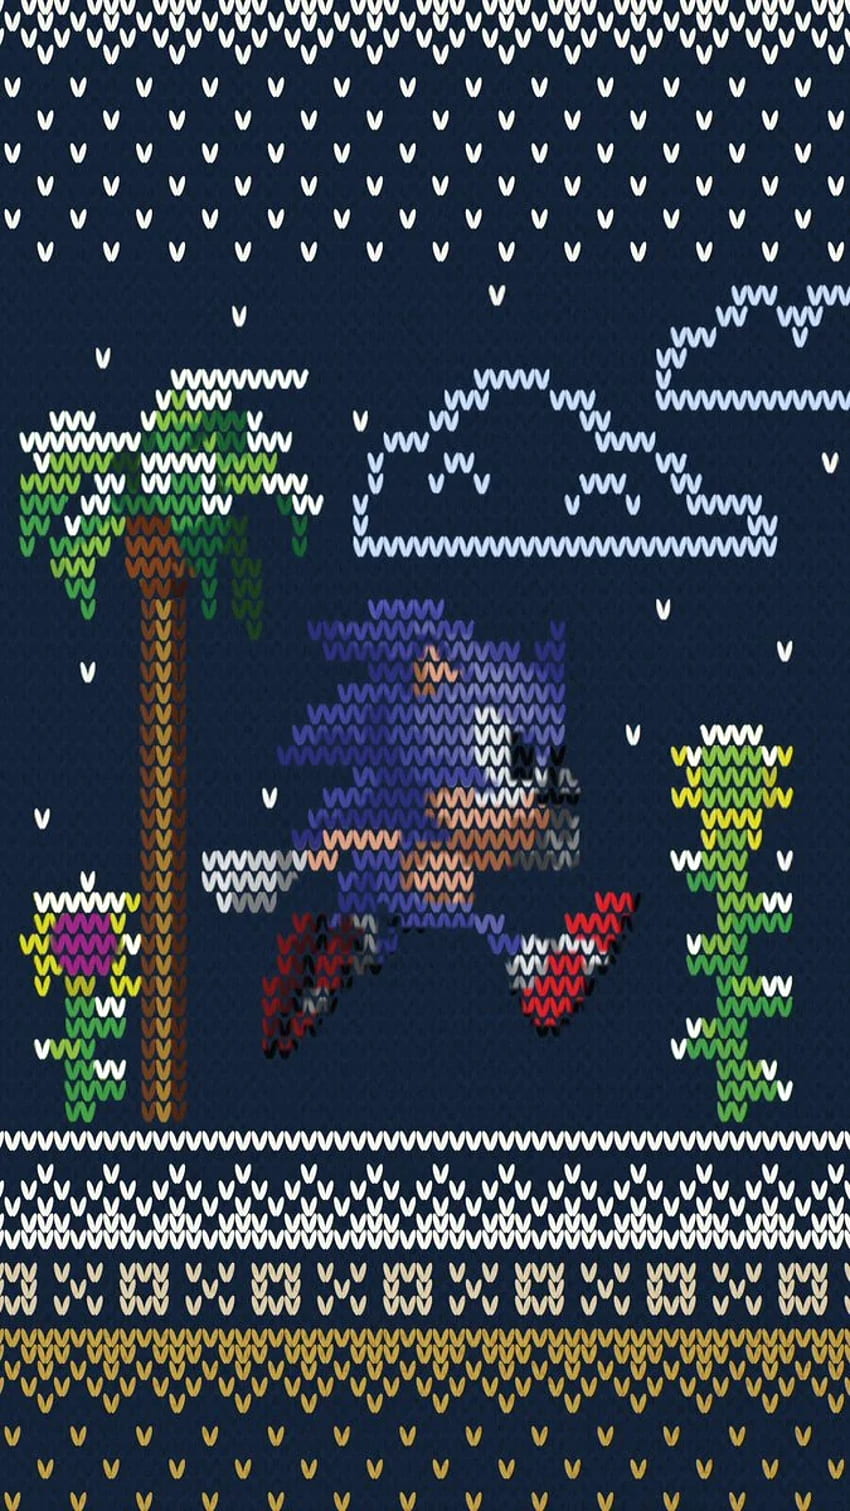 Sonic the Hedgehog - Tatil sezonuna başlamanıza yardımcı olmak için biraz kış mobil yaptık! HD telefon duvar kağıdı